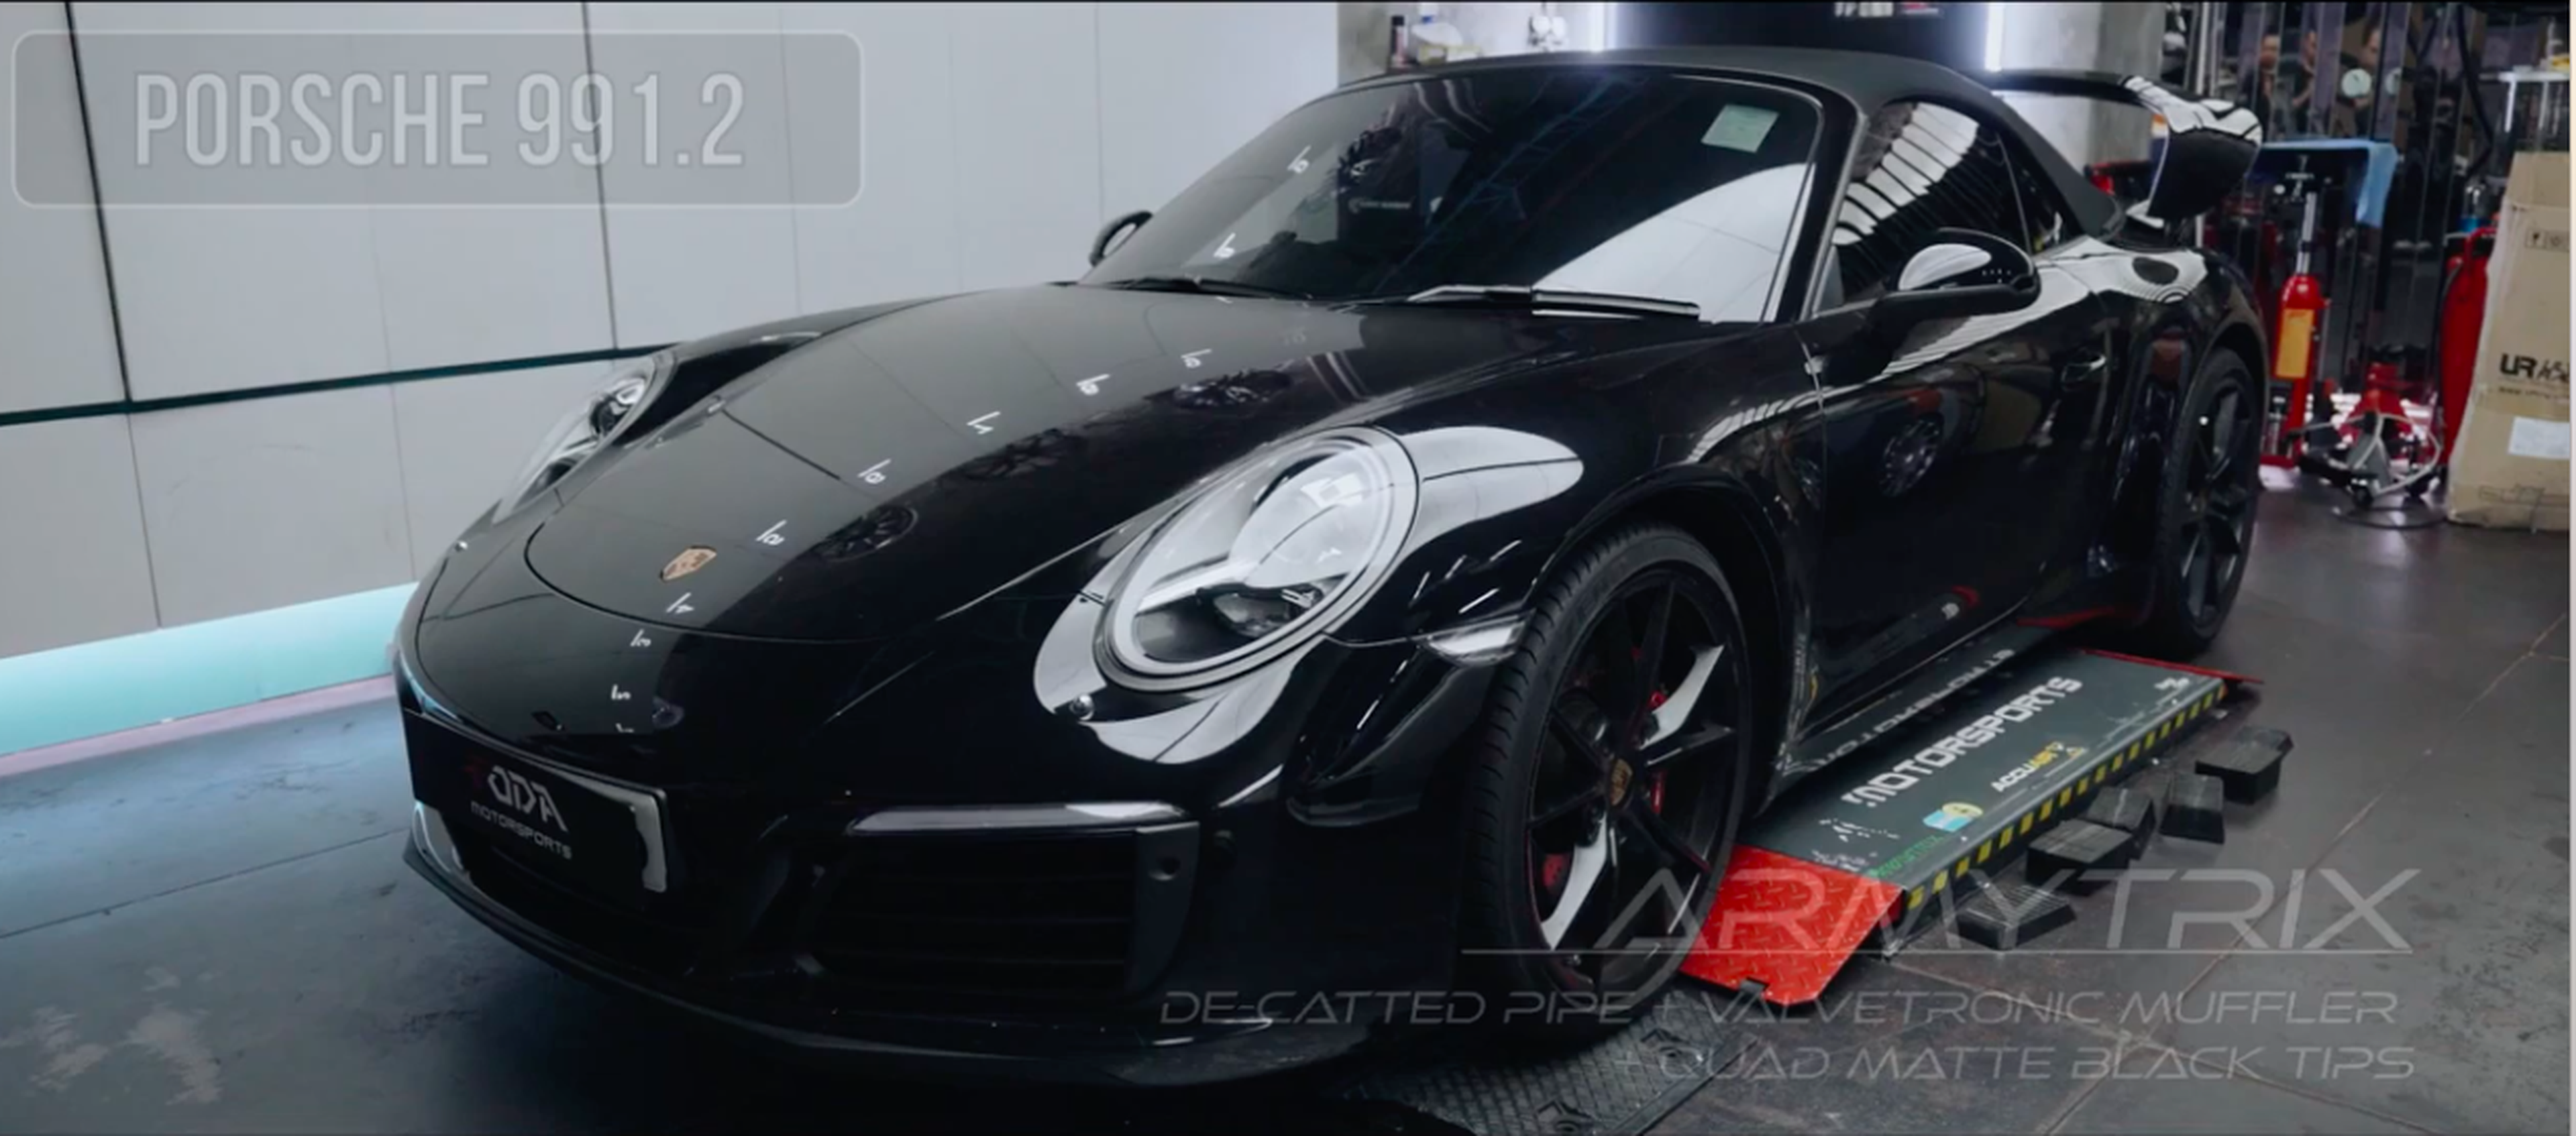 VÍDEO: Este Porsche 911 Carrera S con Armytrix suena como un demonio, ¡sube el volumen!